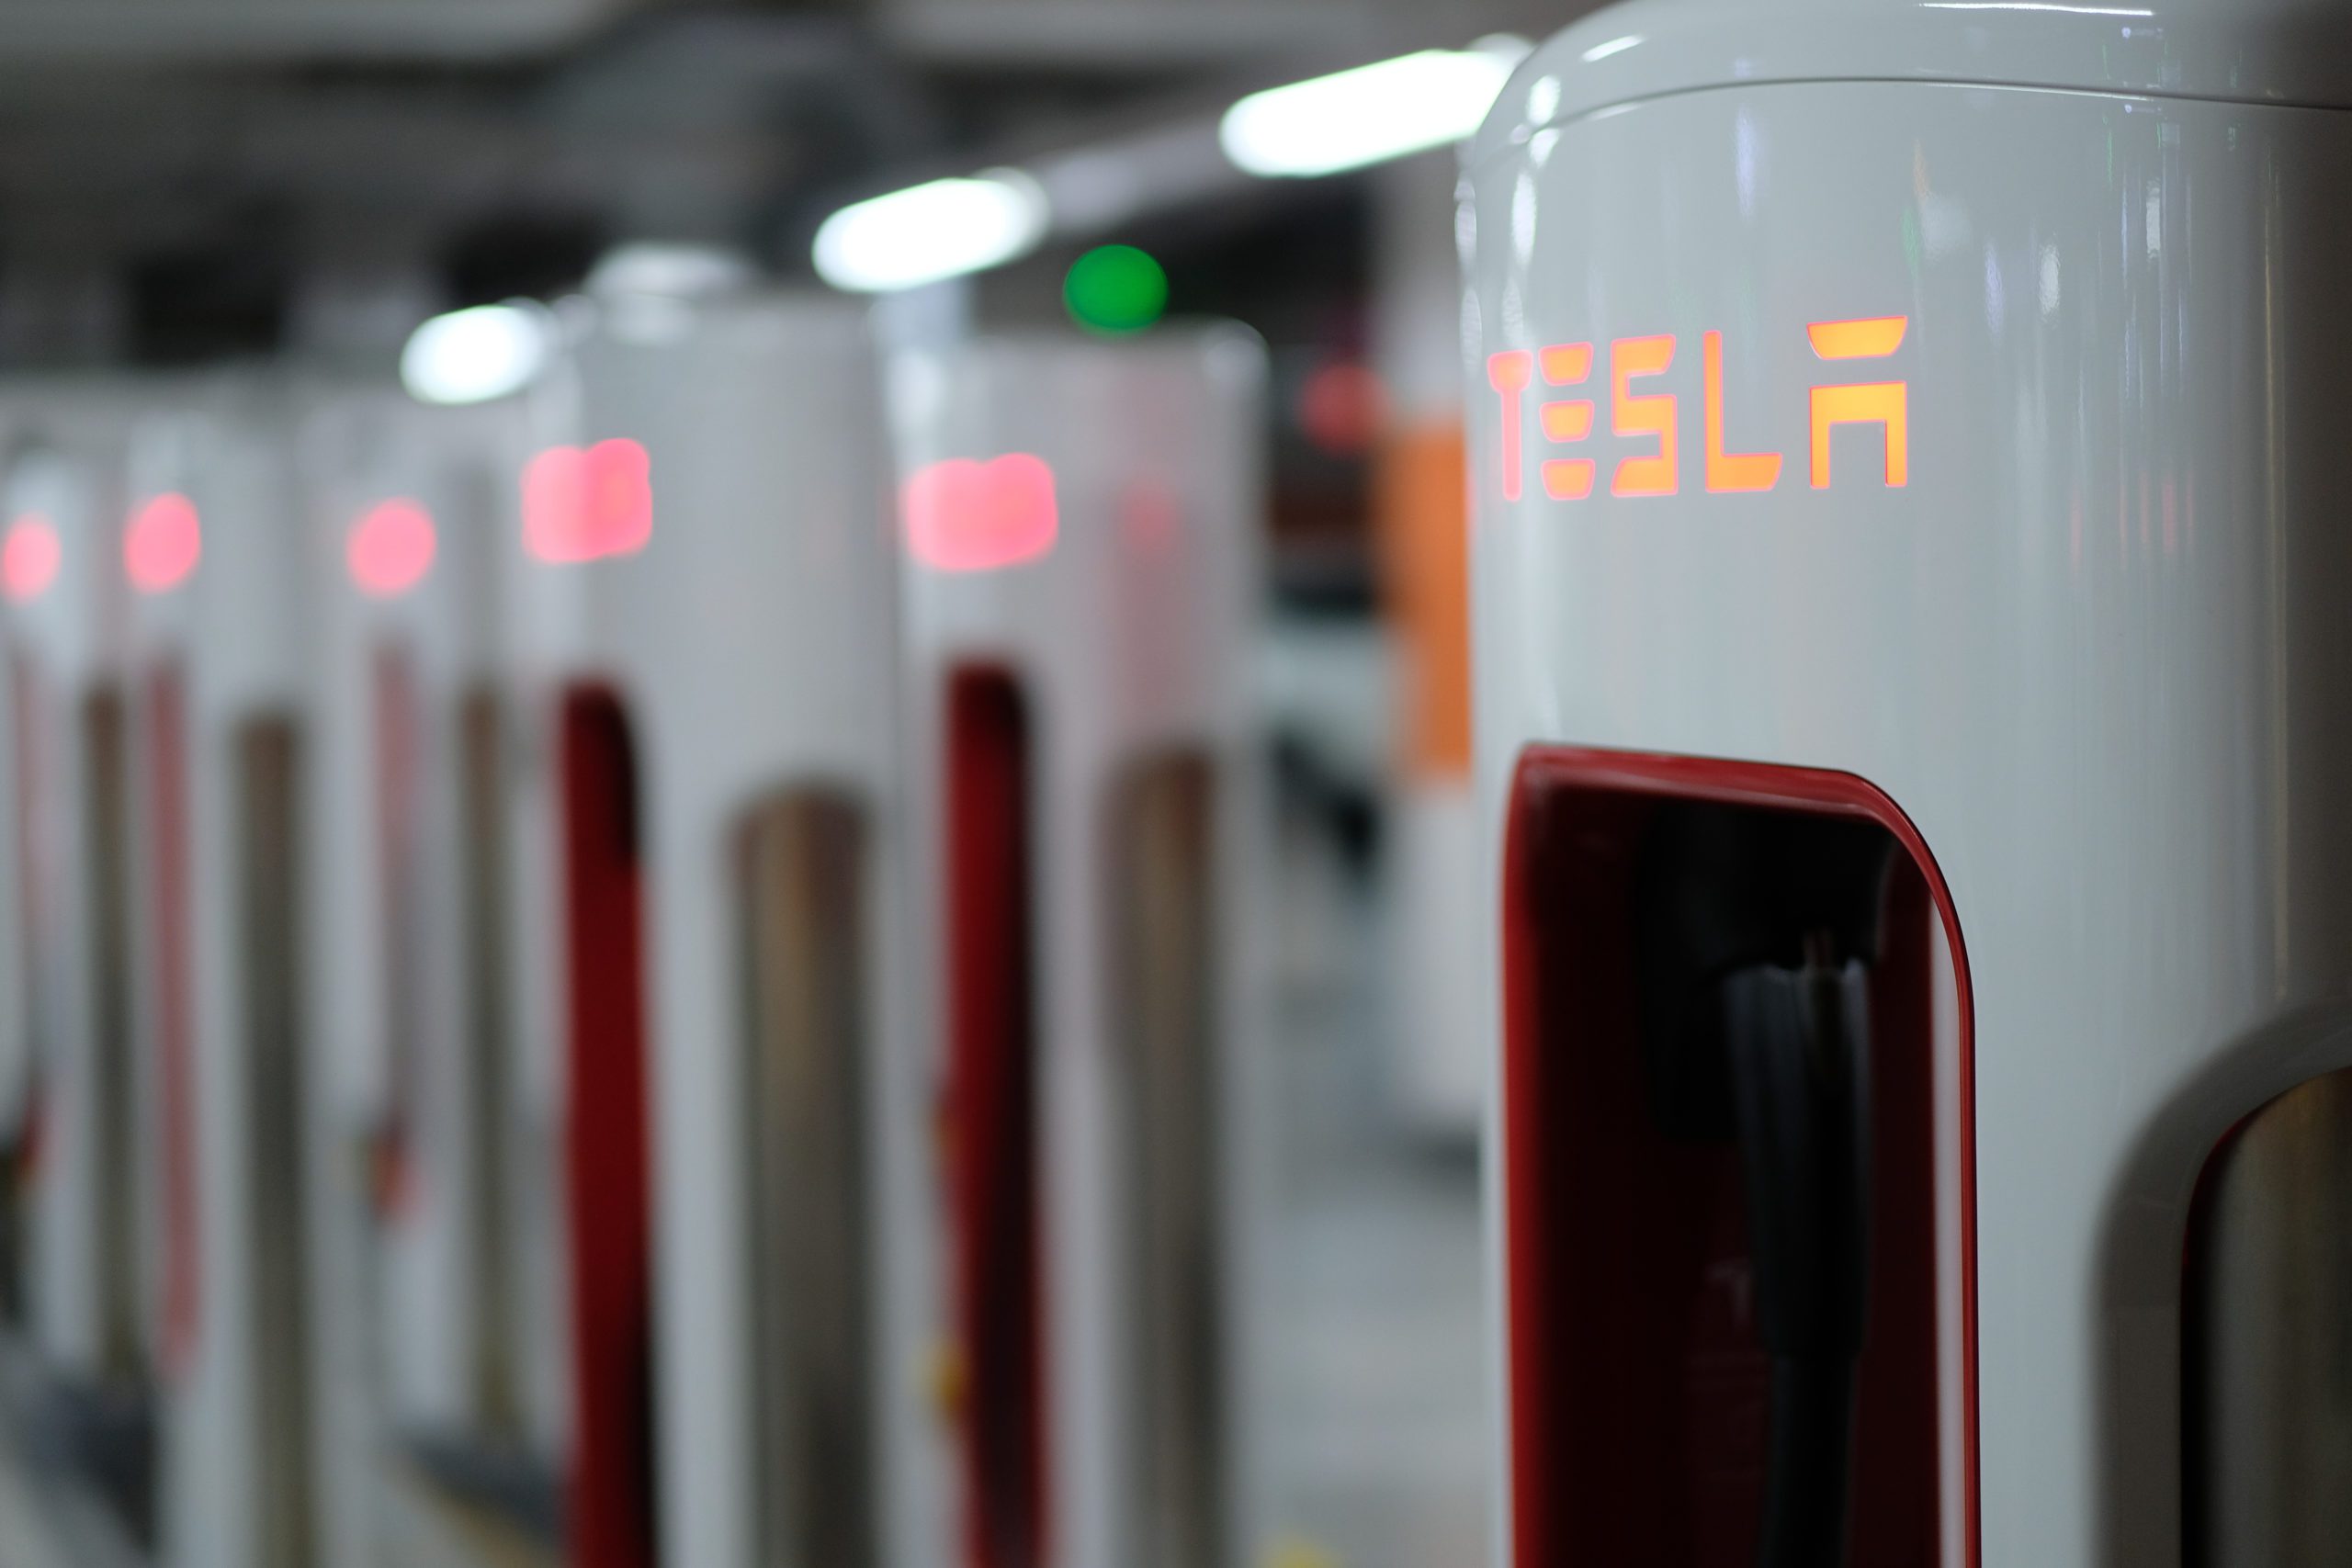 Tesla's charging piles in Shanghai